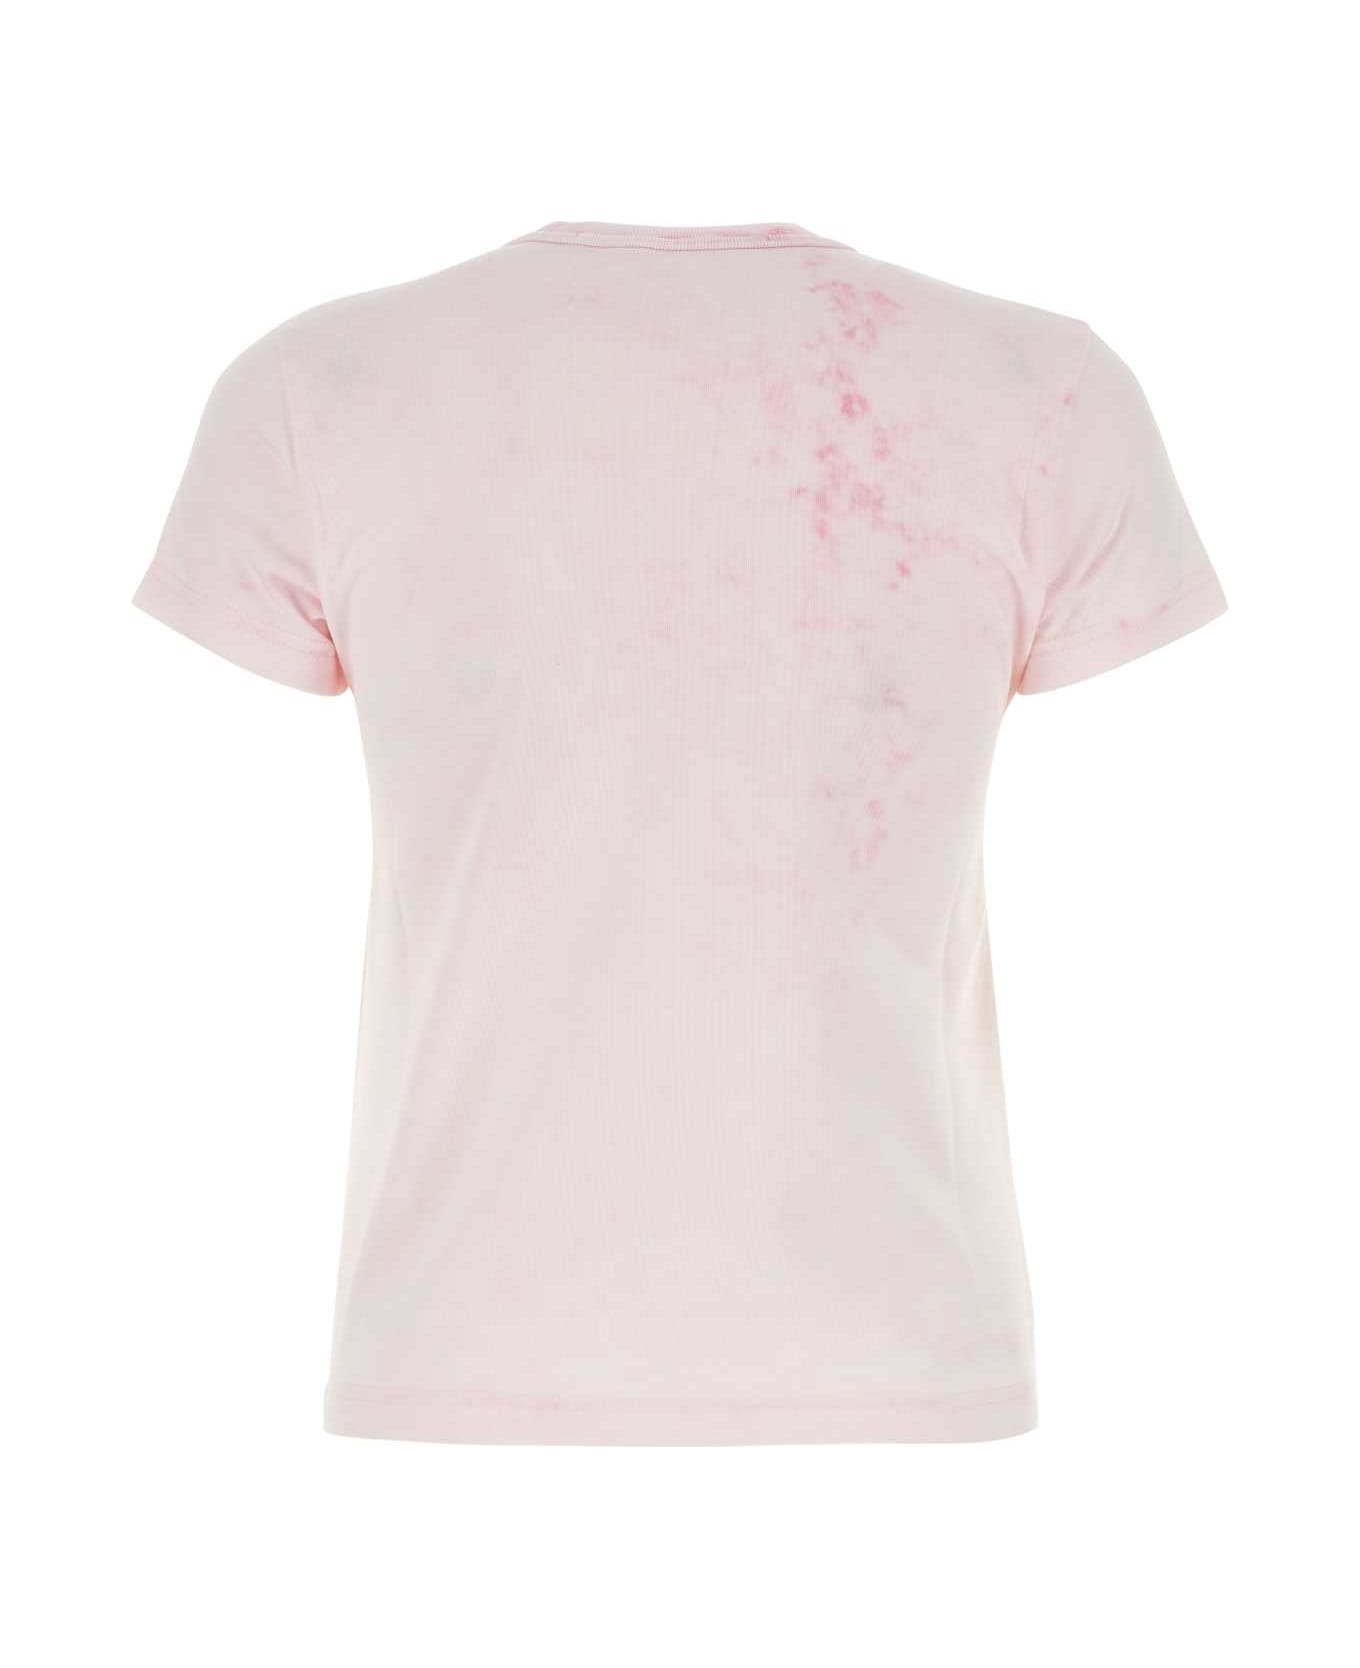 Alexander Wang Light Pink T-shirt - LTPINKBLEACHOUT Tシャツ